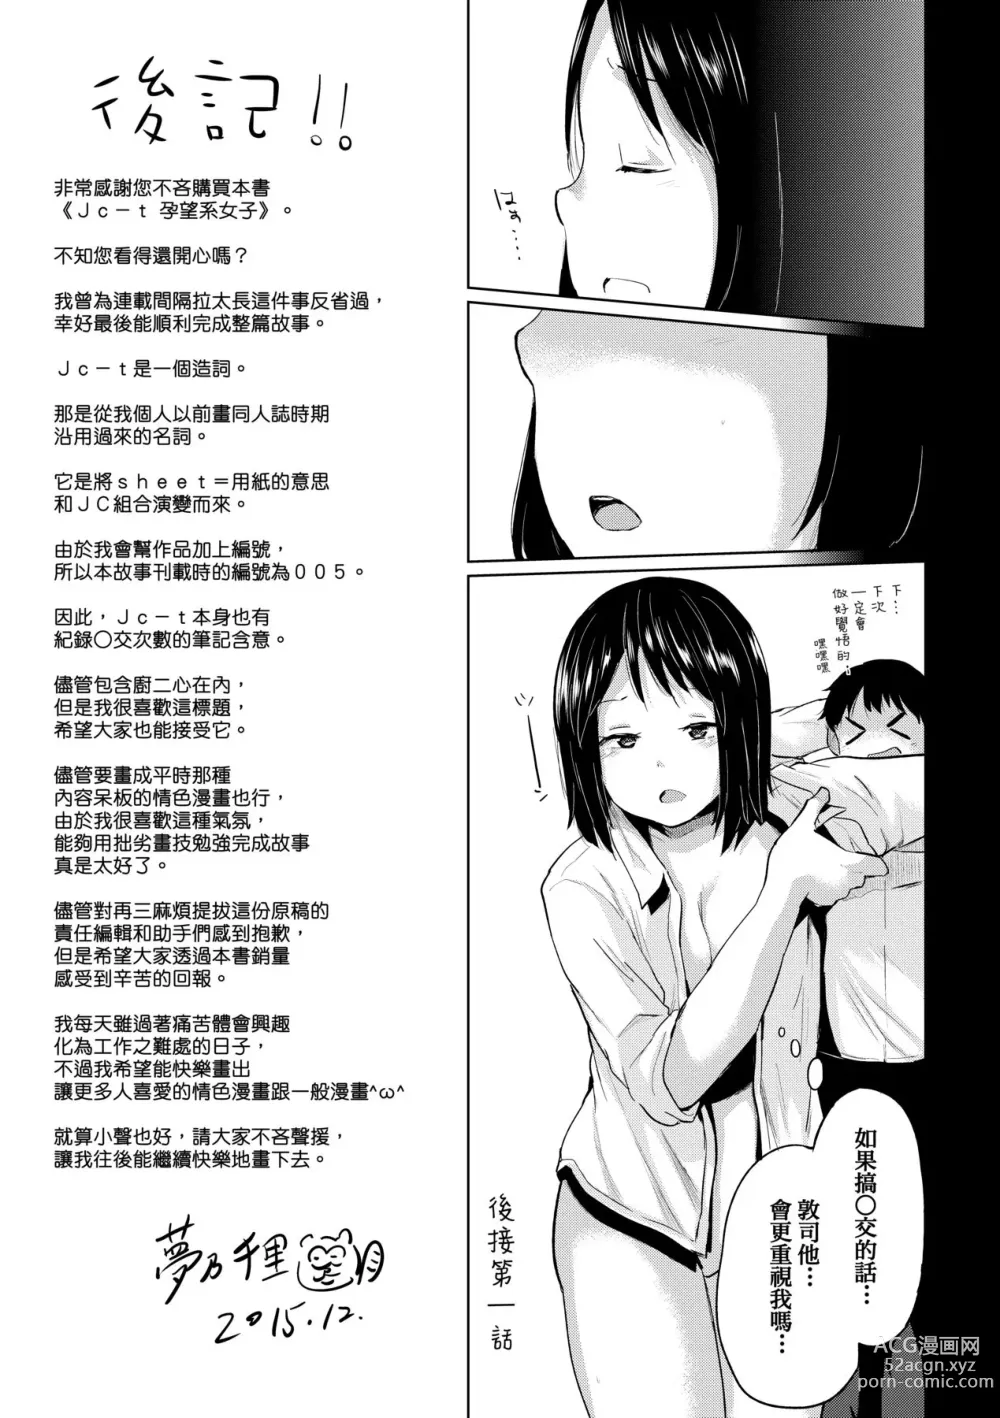 Page 238 of manga jc-t Haramitai-kei Joshi (decensored)